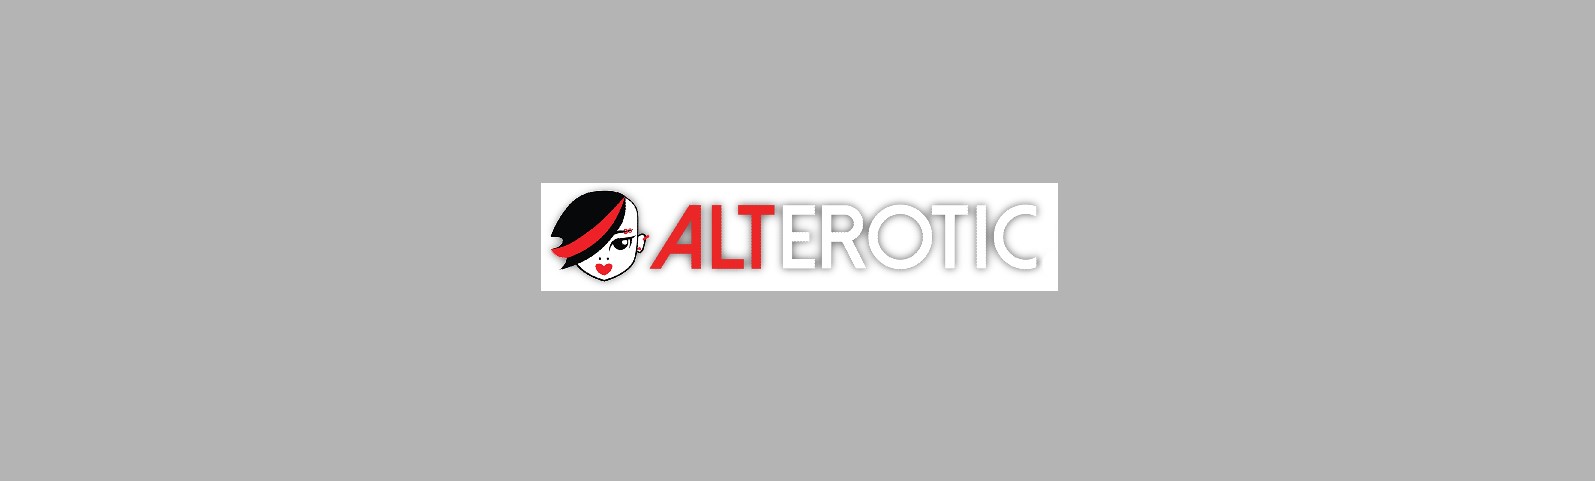 alterotic.com